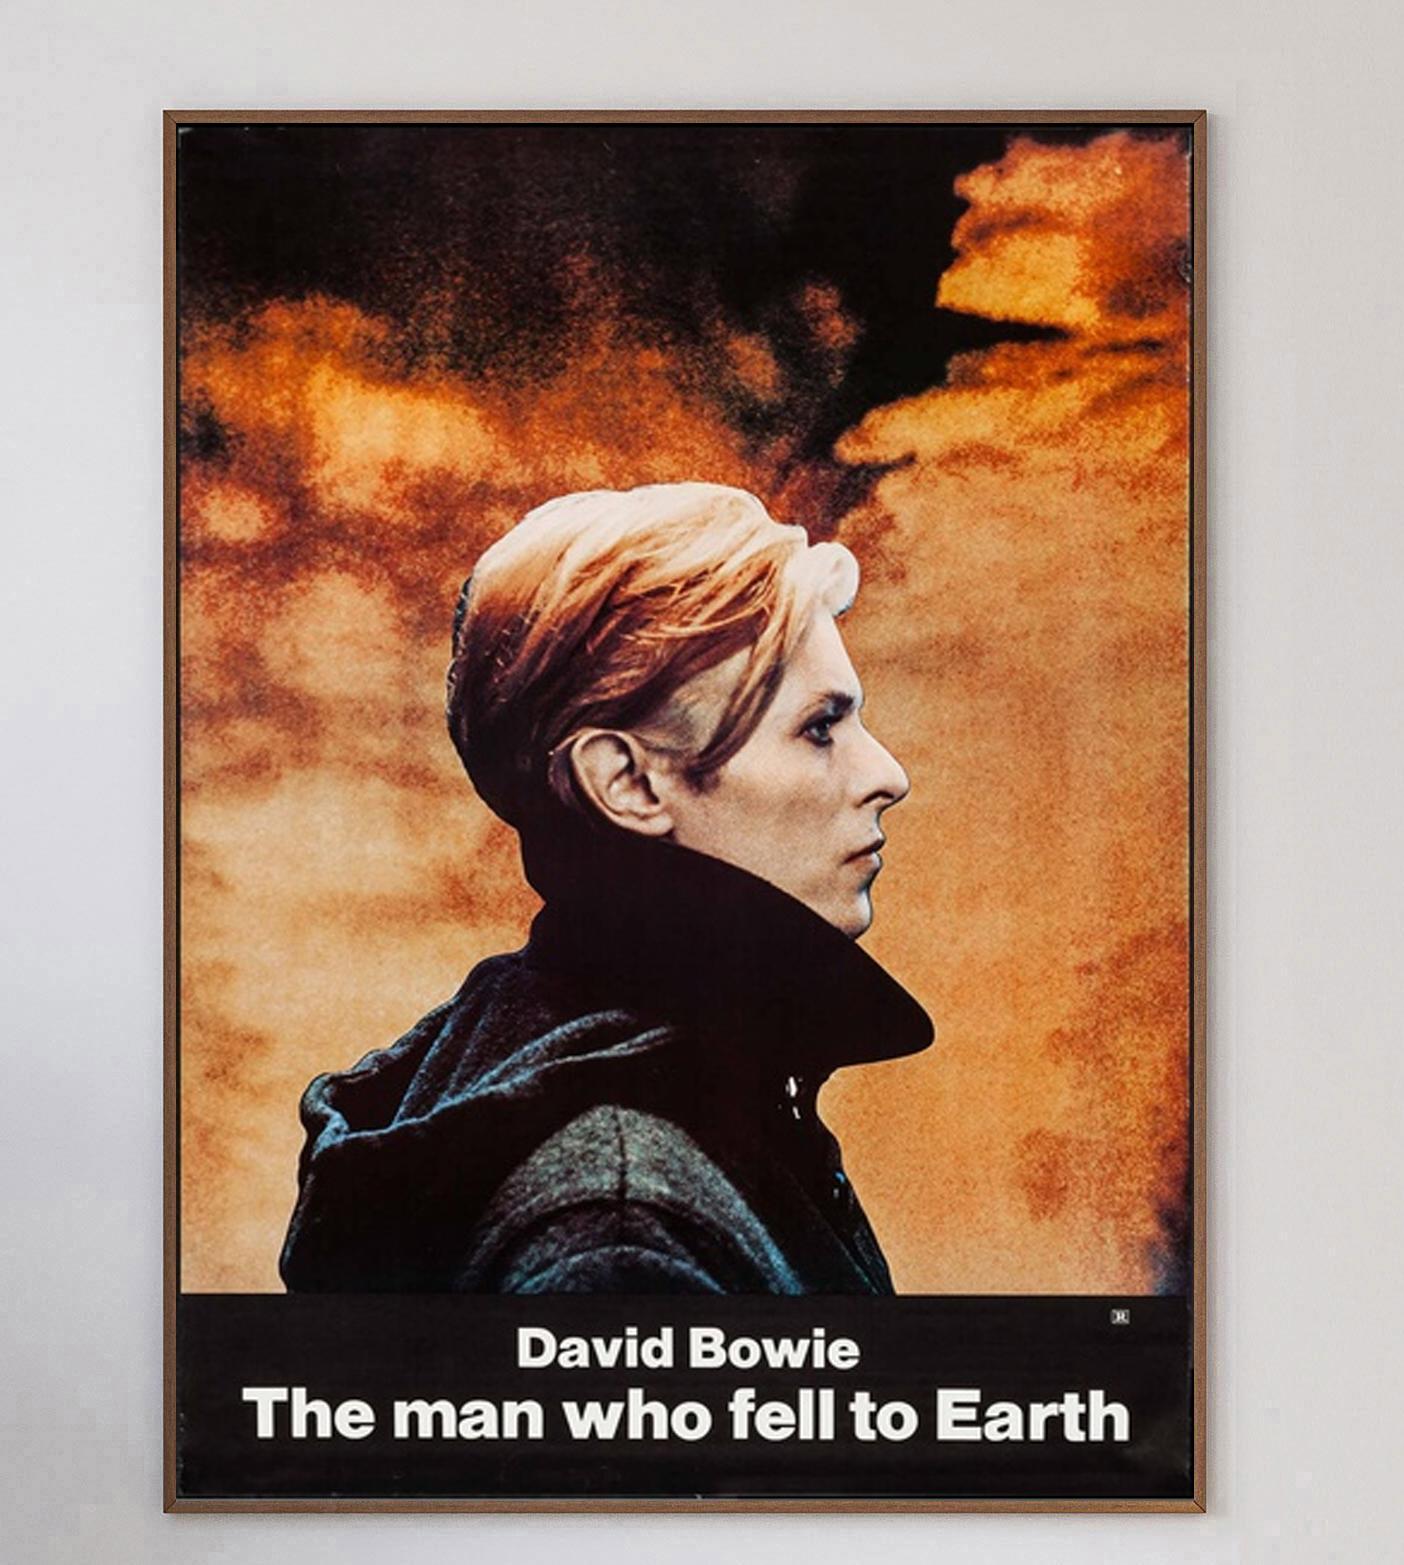 Basé sur le roman éponyme de Walter Tevis, The Man Who Fell To Earth est sorti en 1976. Réalisé par Nicholas Reog, le film a marqué la première apparition de David Bowie au cinéma et continue aujourd'hui encore à faire l'objet d'un grand culte.

Ce